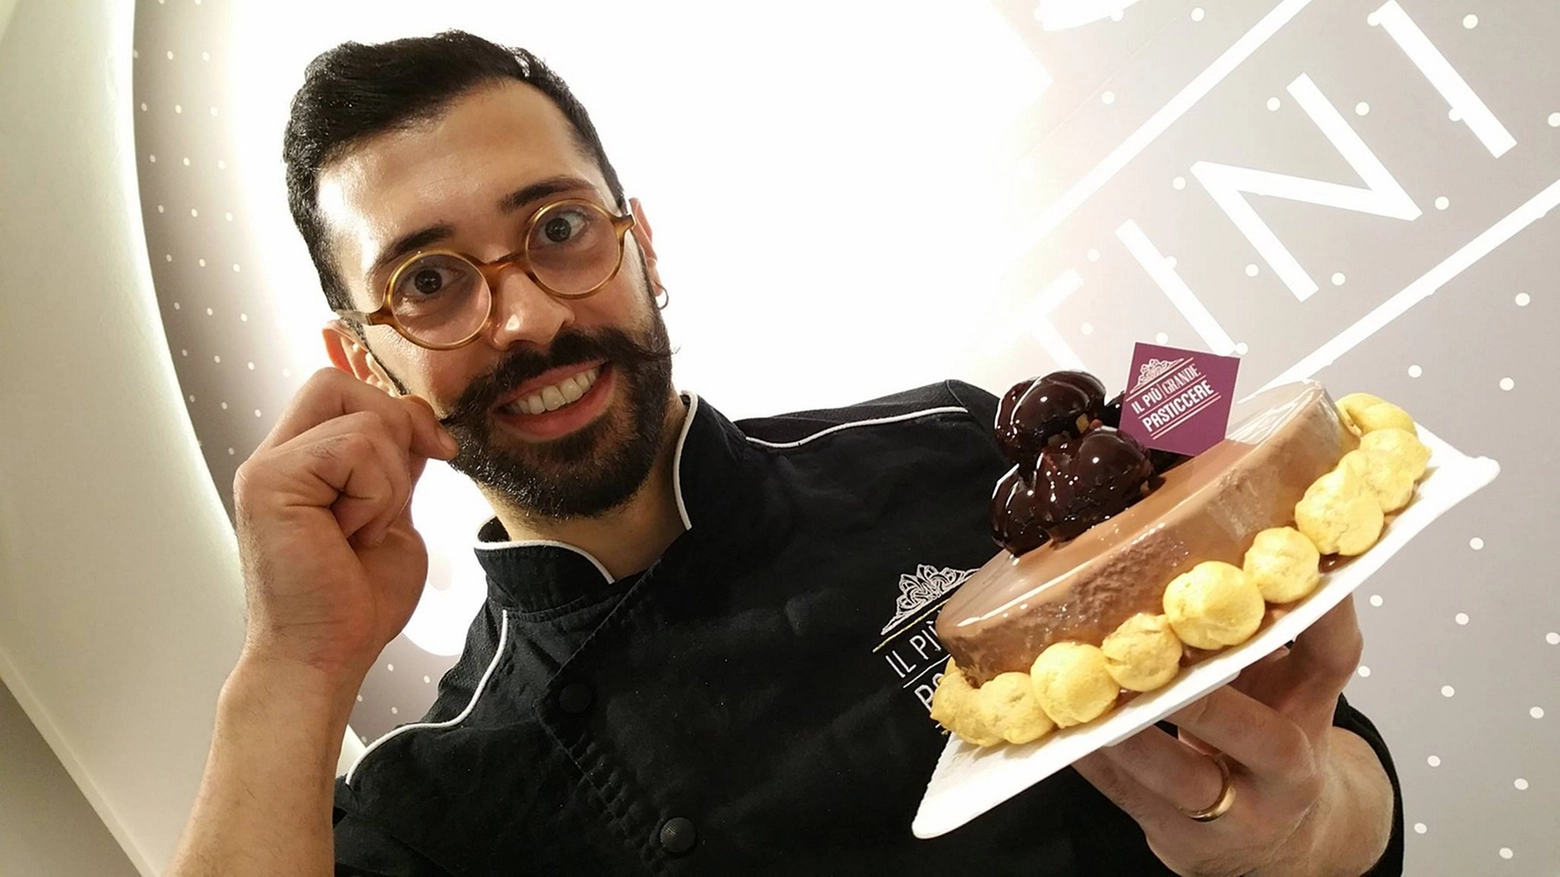 Sebastiano Caridi, da Faenza, ha vinto il programma "Il più grande pasticcere"